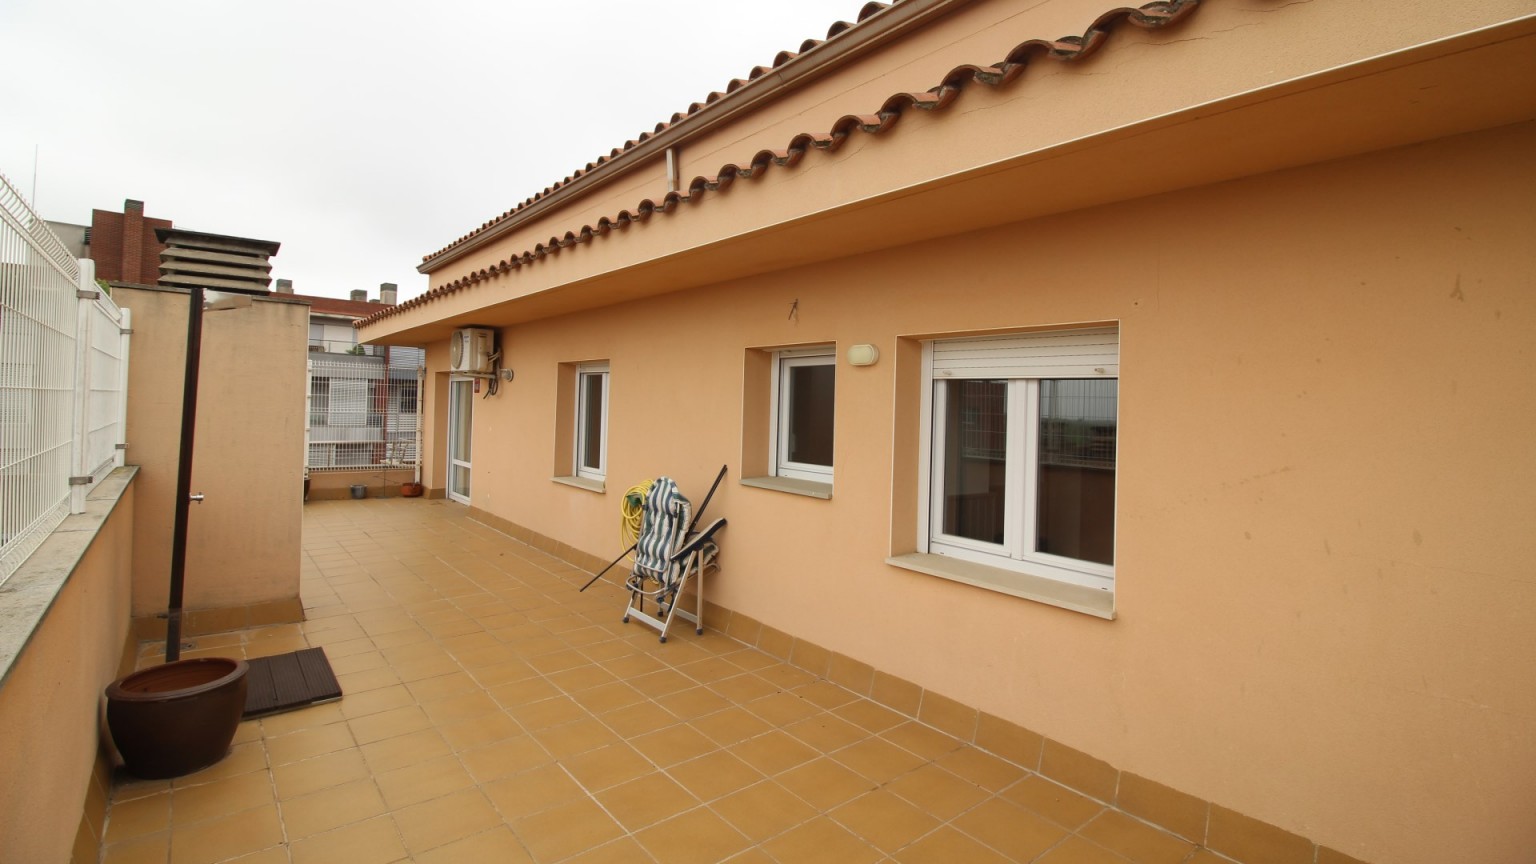 Excelente duplex en venta, con amplias terrazas y parking incluido , zona Creu de la Mà.